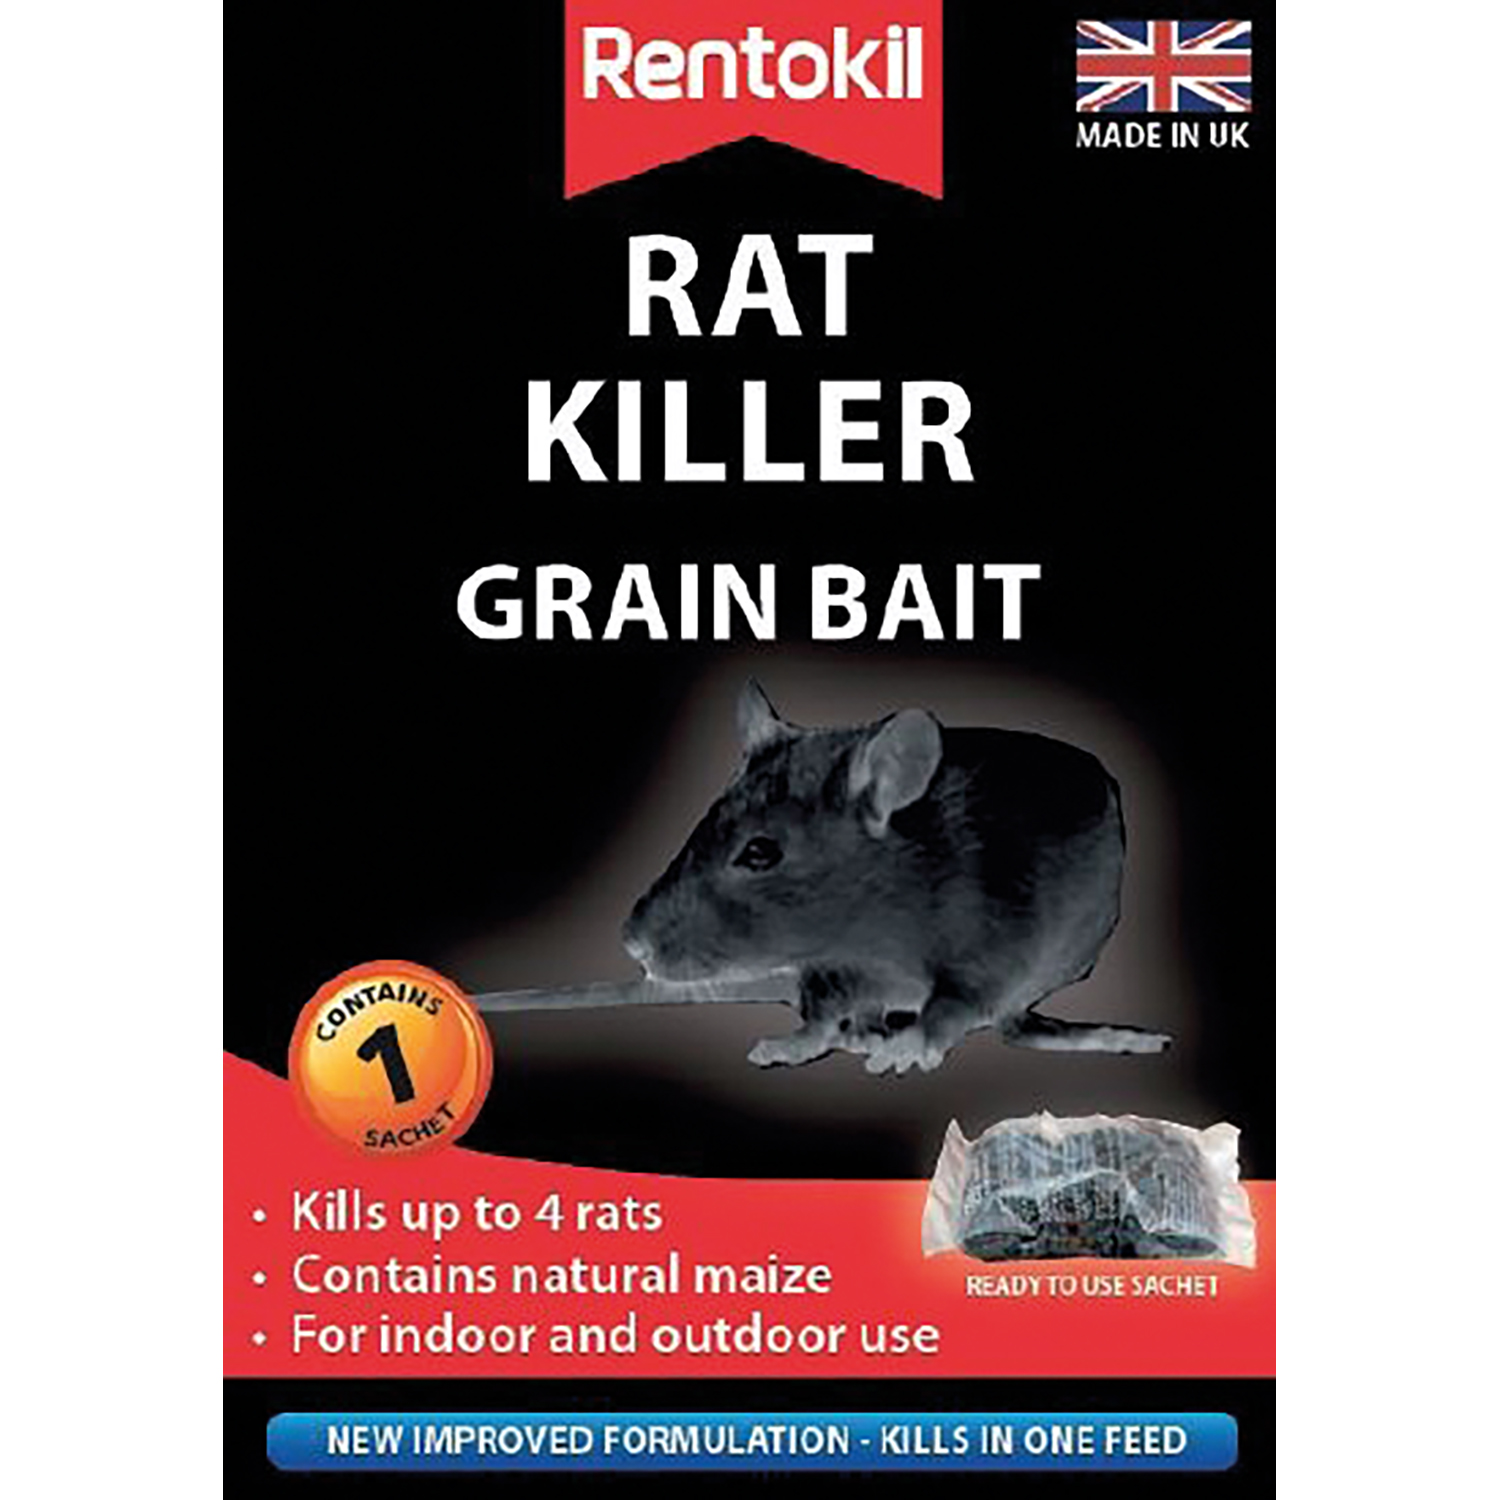 RENTOKIL RAT KILLER GRAIN BAIT 1 SACHET